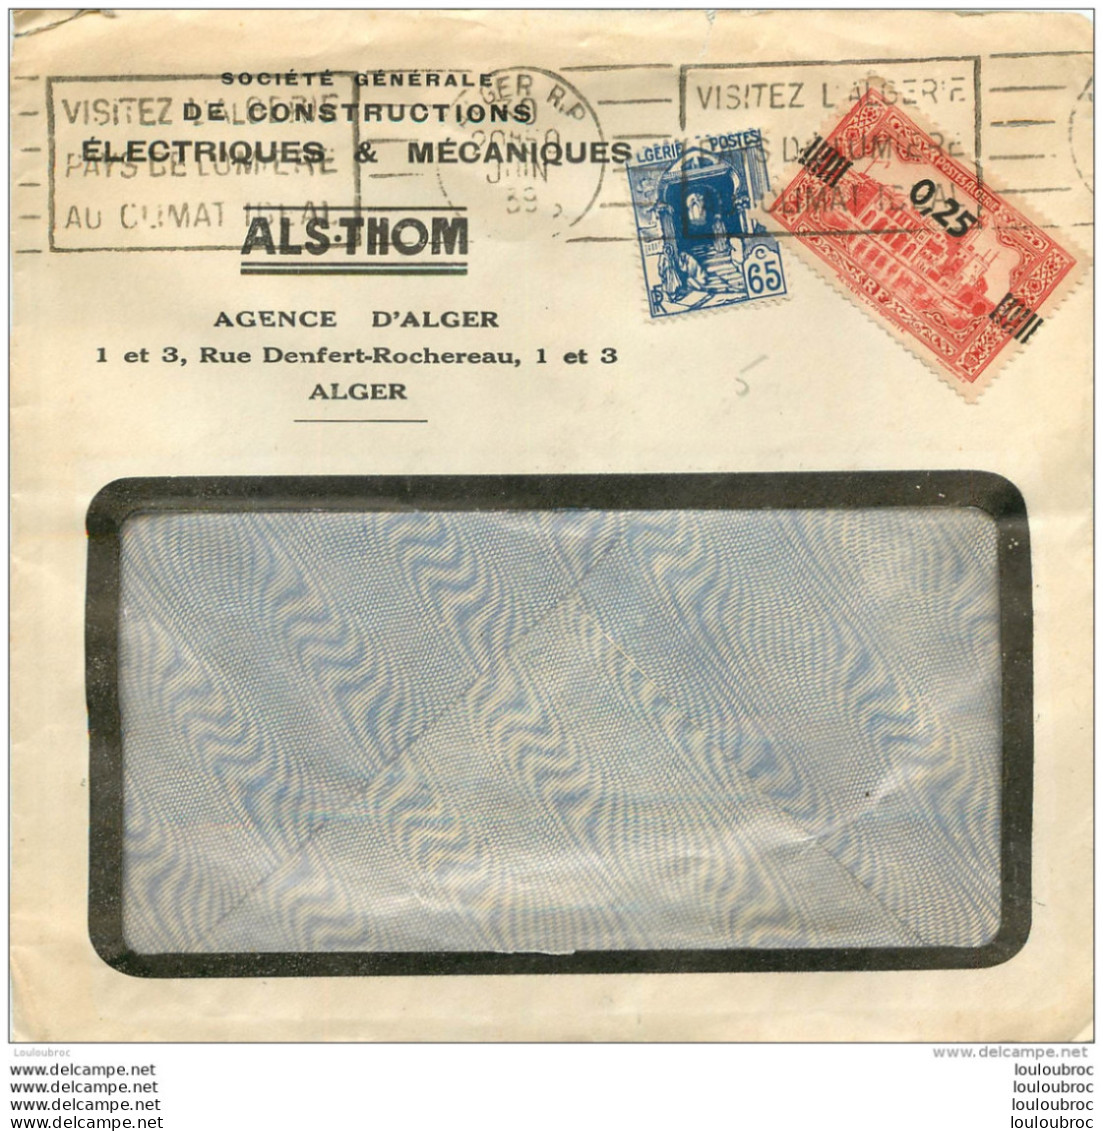 ENVELOPPE  1939 ALS.THOM AGENCE D'ALGER - Oblitérés